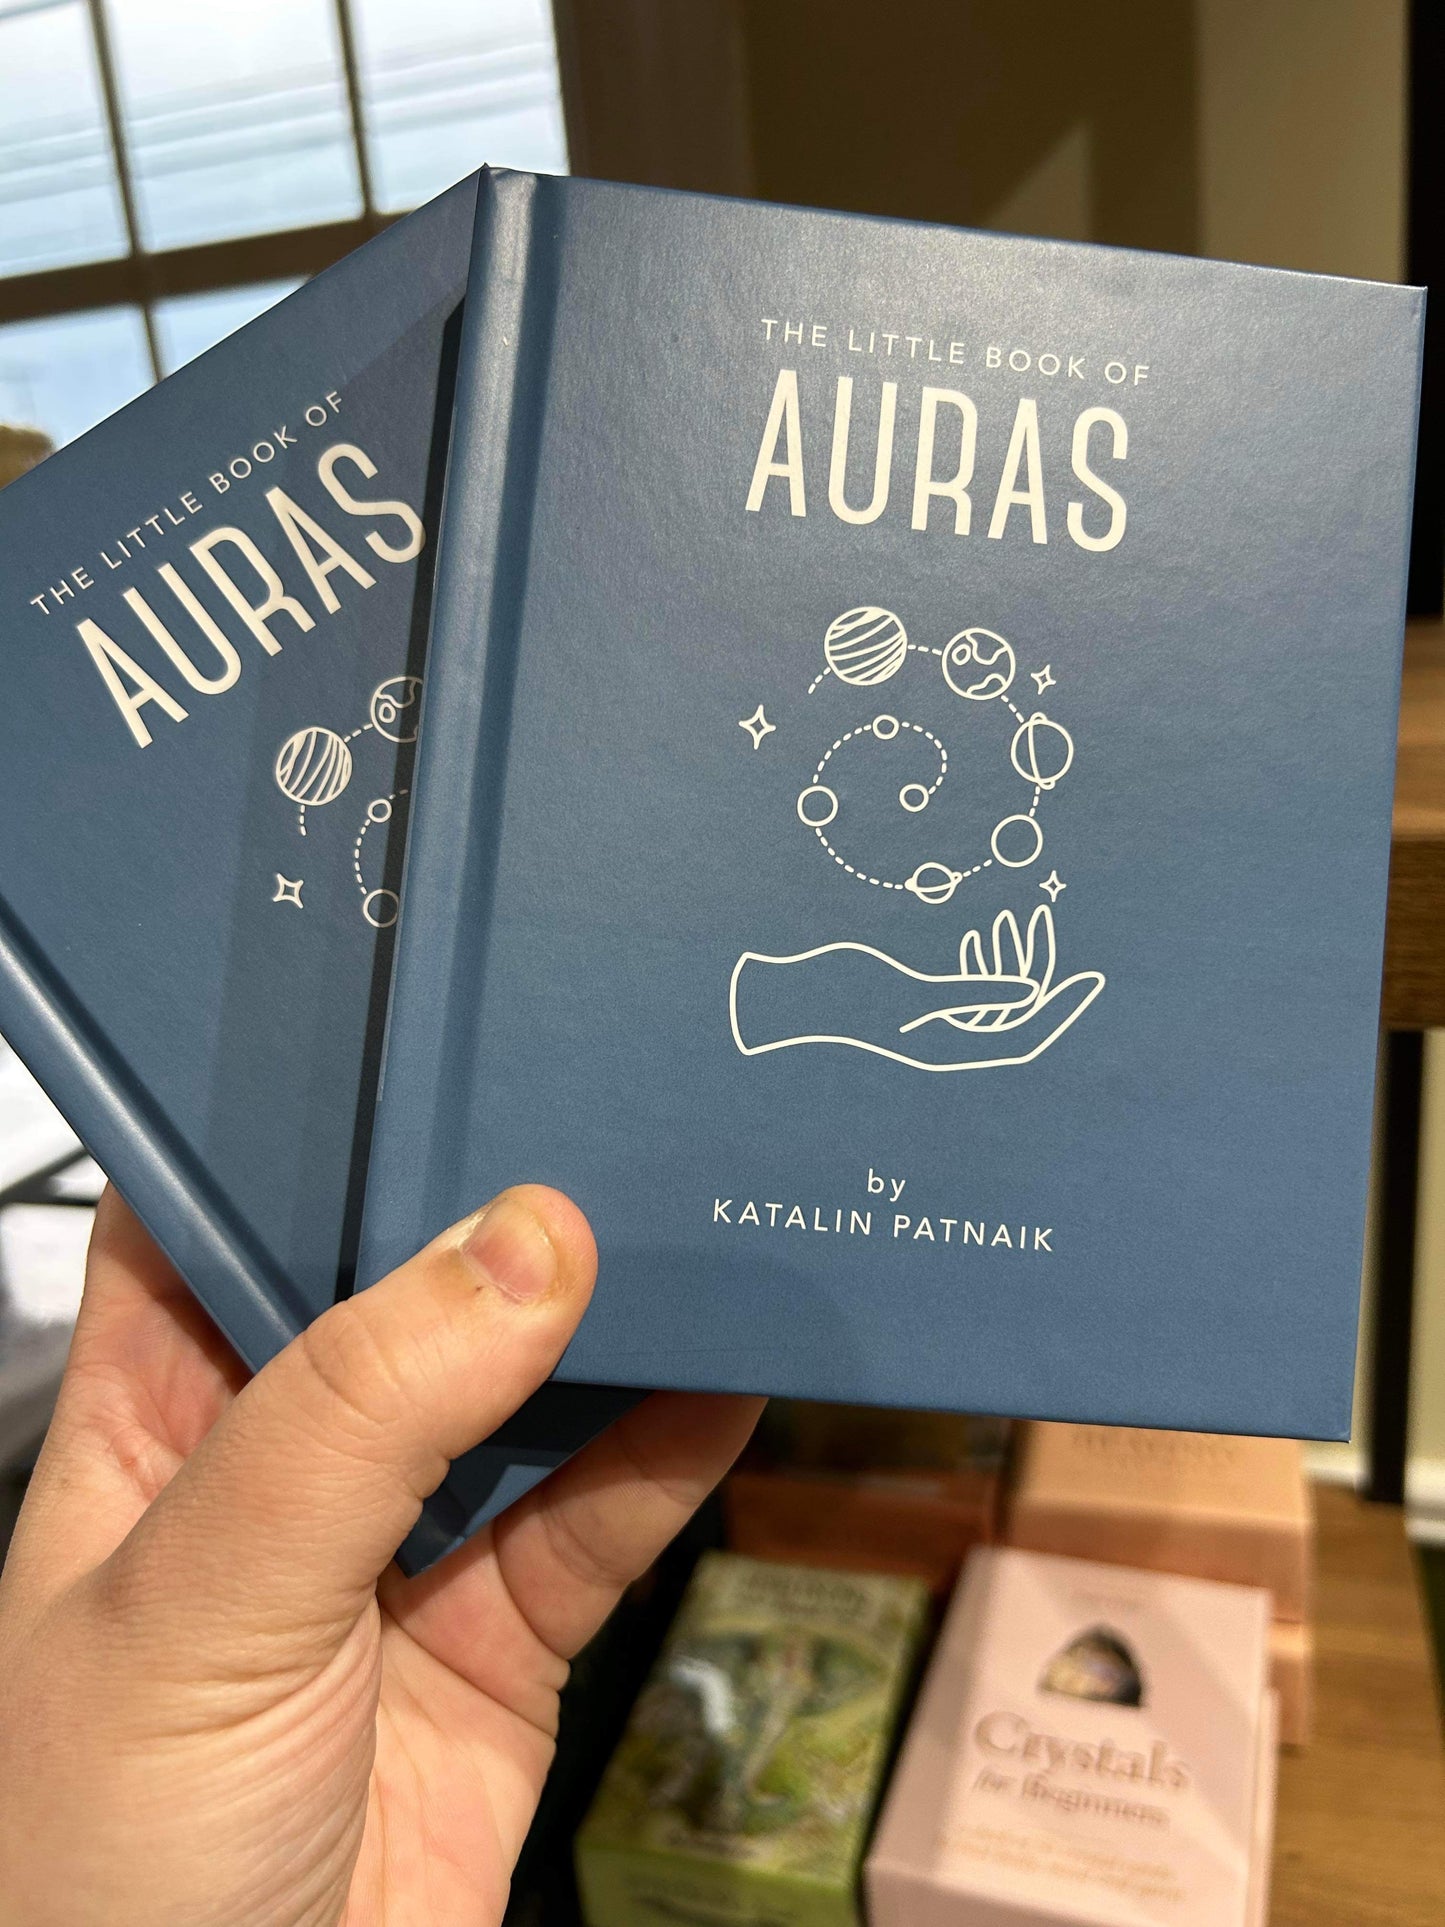 The Little Book of Auras by Katalin Patnaik